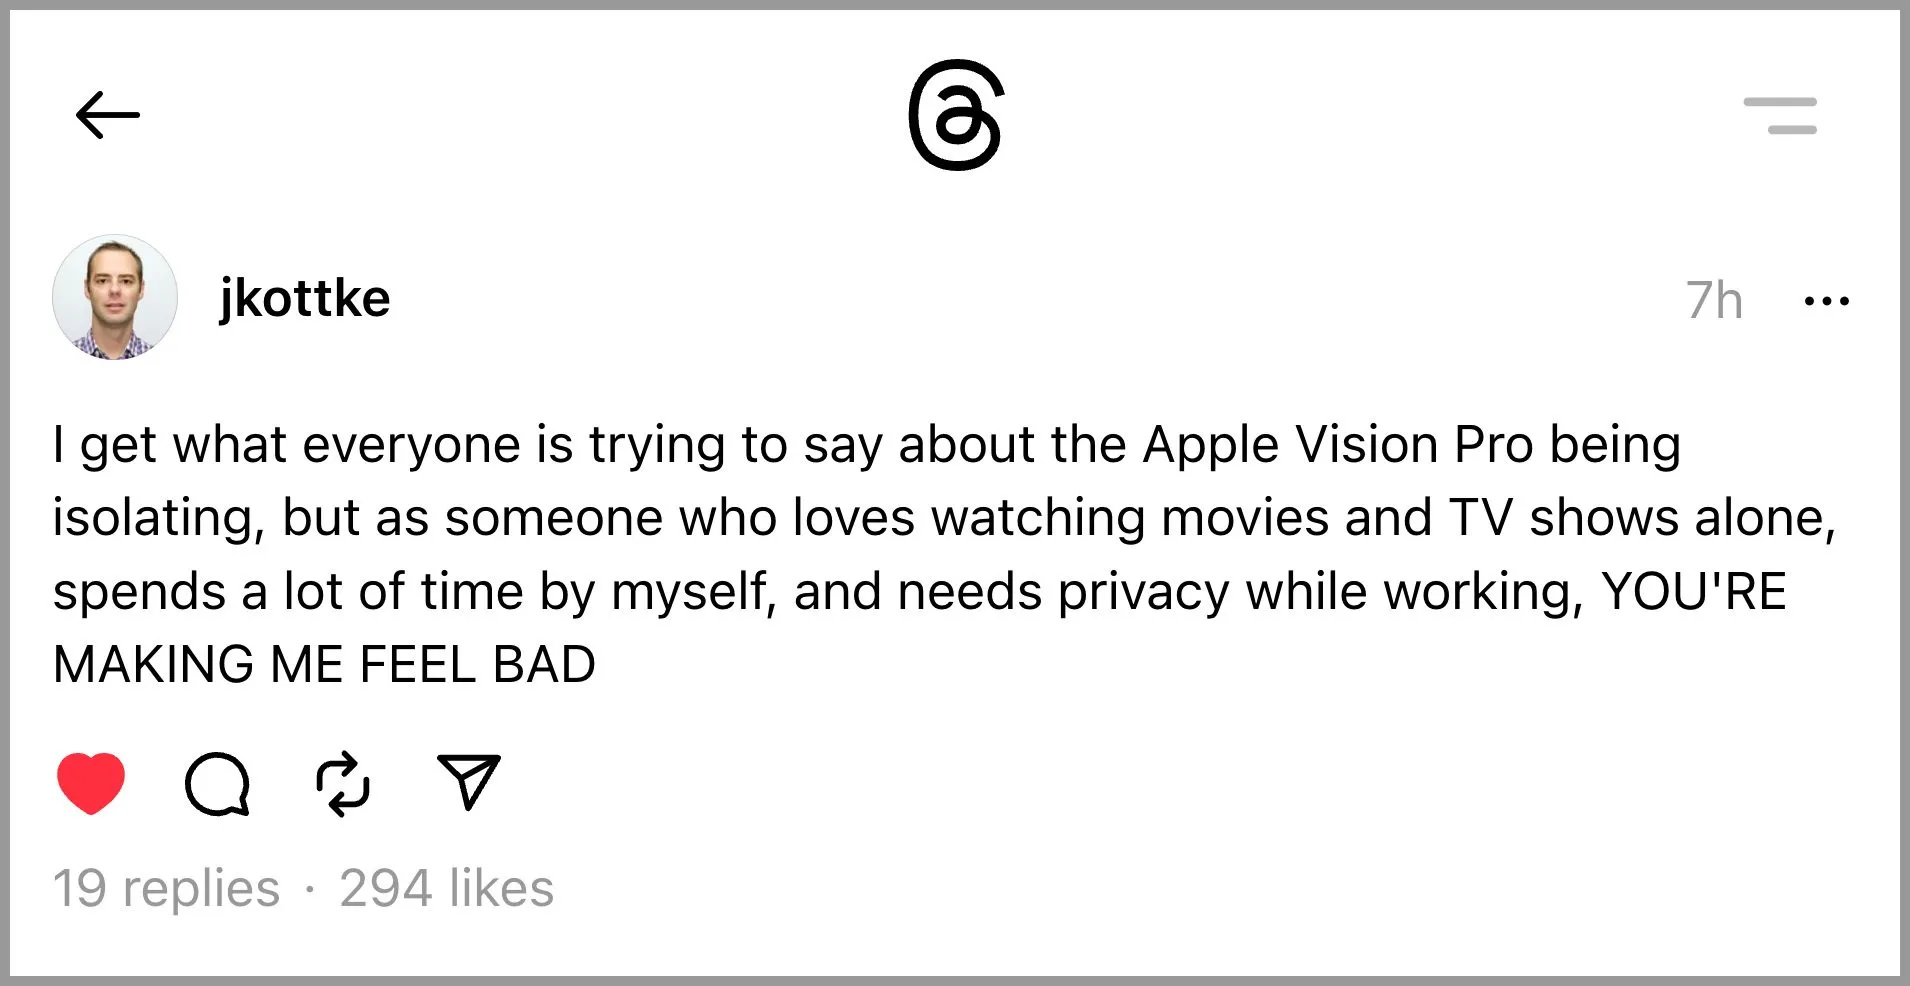 بسیاری از مردم به این نکته اشاره می کنند که Apple Vision Pro بسیار شخصی، بسیار خصوصی و بنابراین بسیار منزوی است. جدا از تماس های FaceTime یا Zoom در داخل دستگاه، اینطور نیست که بتوانید در یک فضای مجازی با دوستان باشید. این بهترین صفحه نمایش سینمای خانگی با صفحه بزرگی است که خواهید داشت، اما باید به تنهایی آن را تماشا کنید.